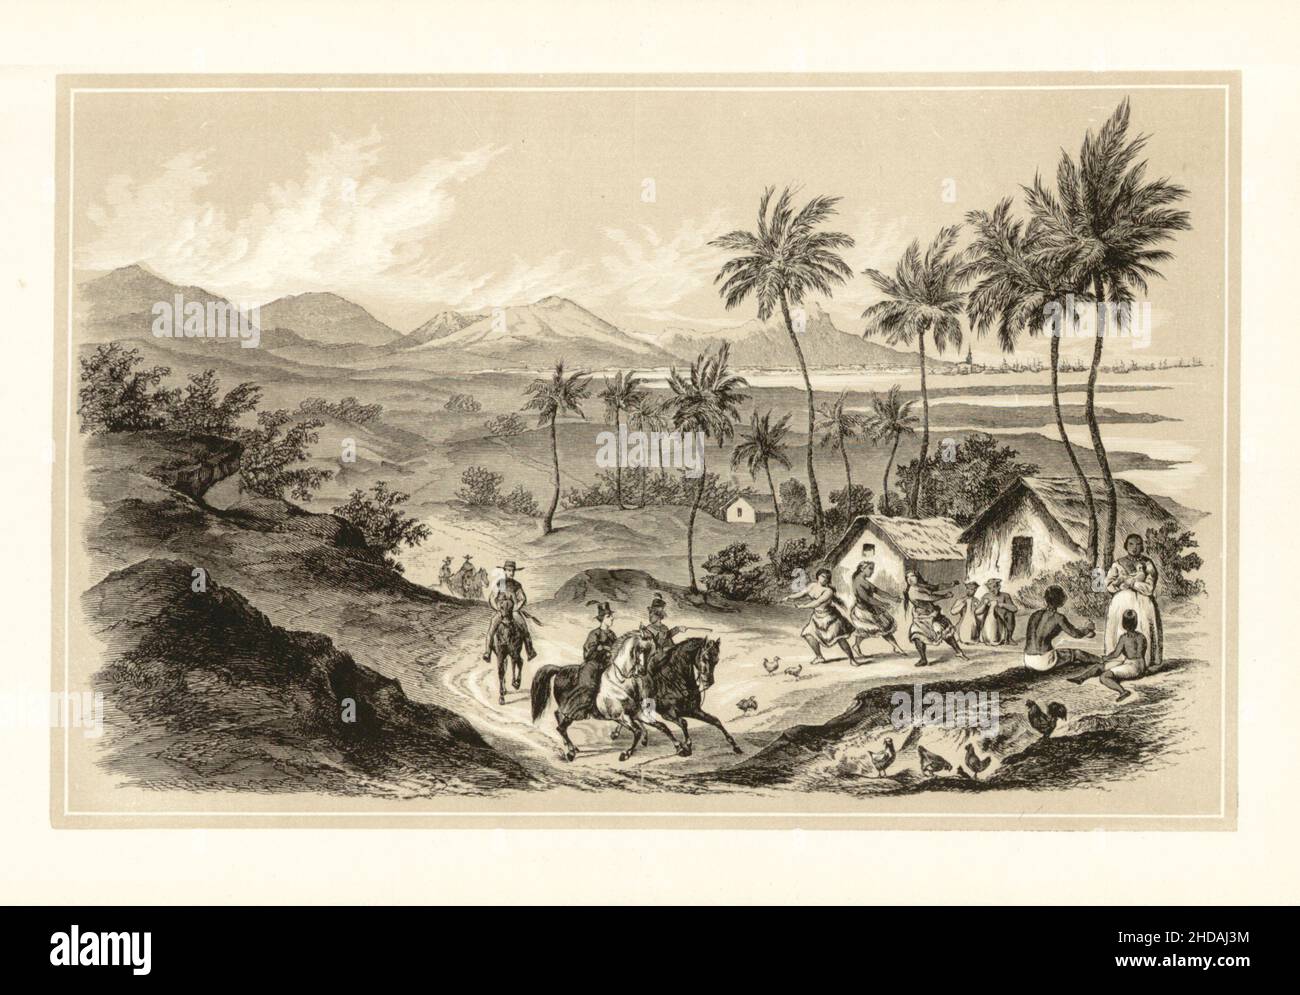 Litografía antigua del reino hawaiano del siglo 19th: Honolulu en la isla de Ouahou. 1856 Expedición del Comodoro Perry Foto de stock